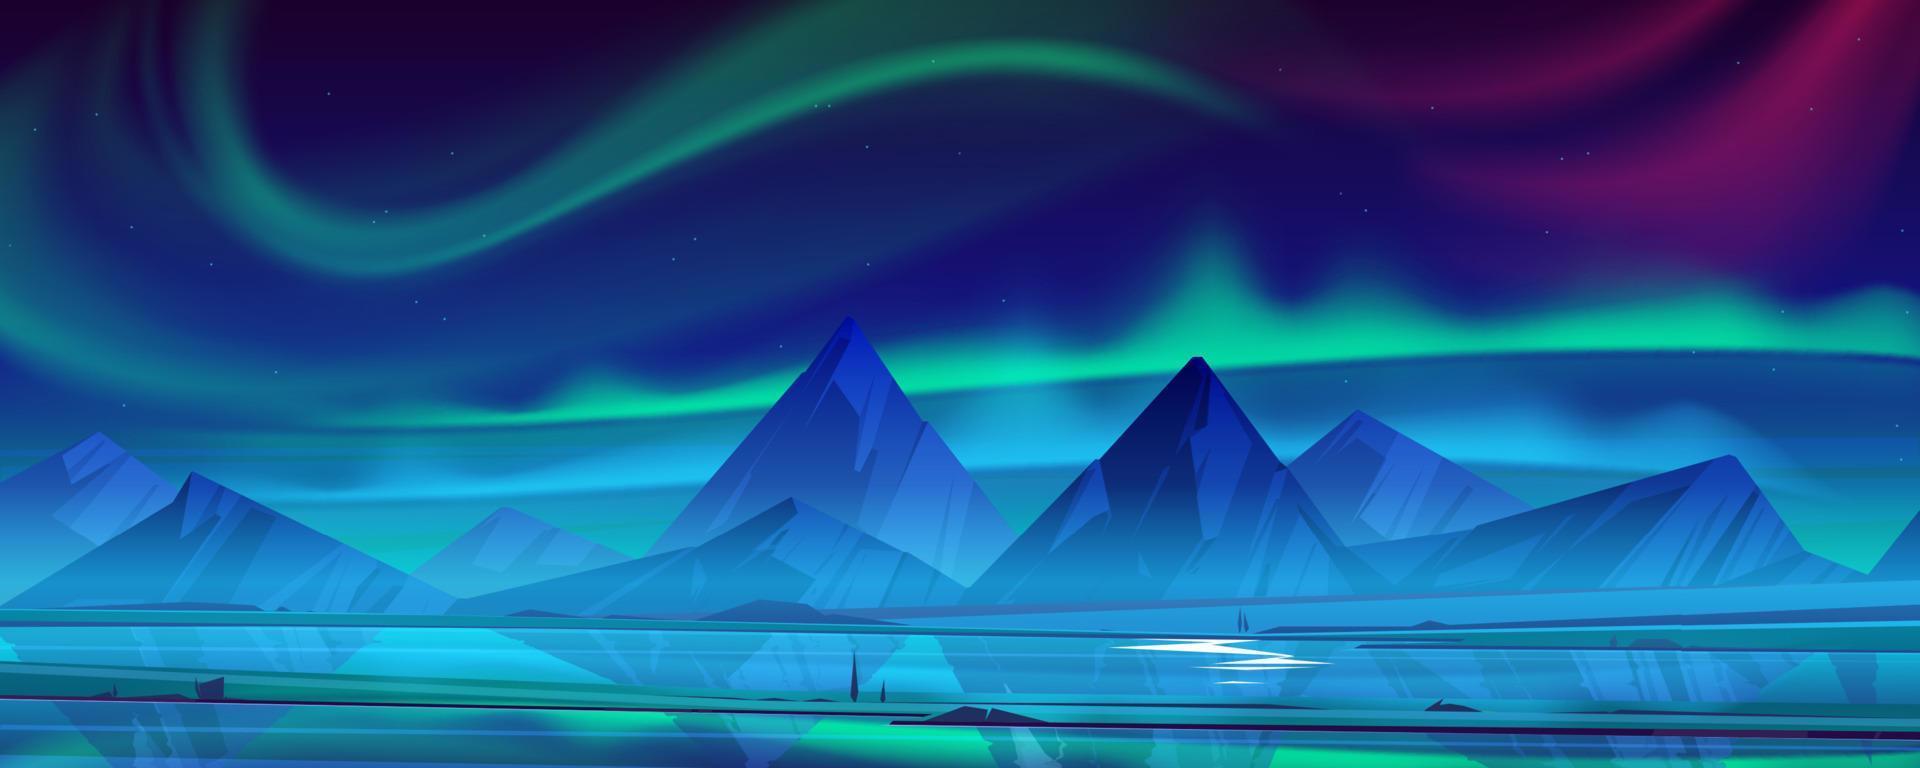 nacht landschap met Aurora borealis in lucht vector